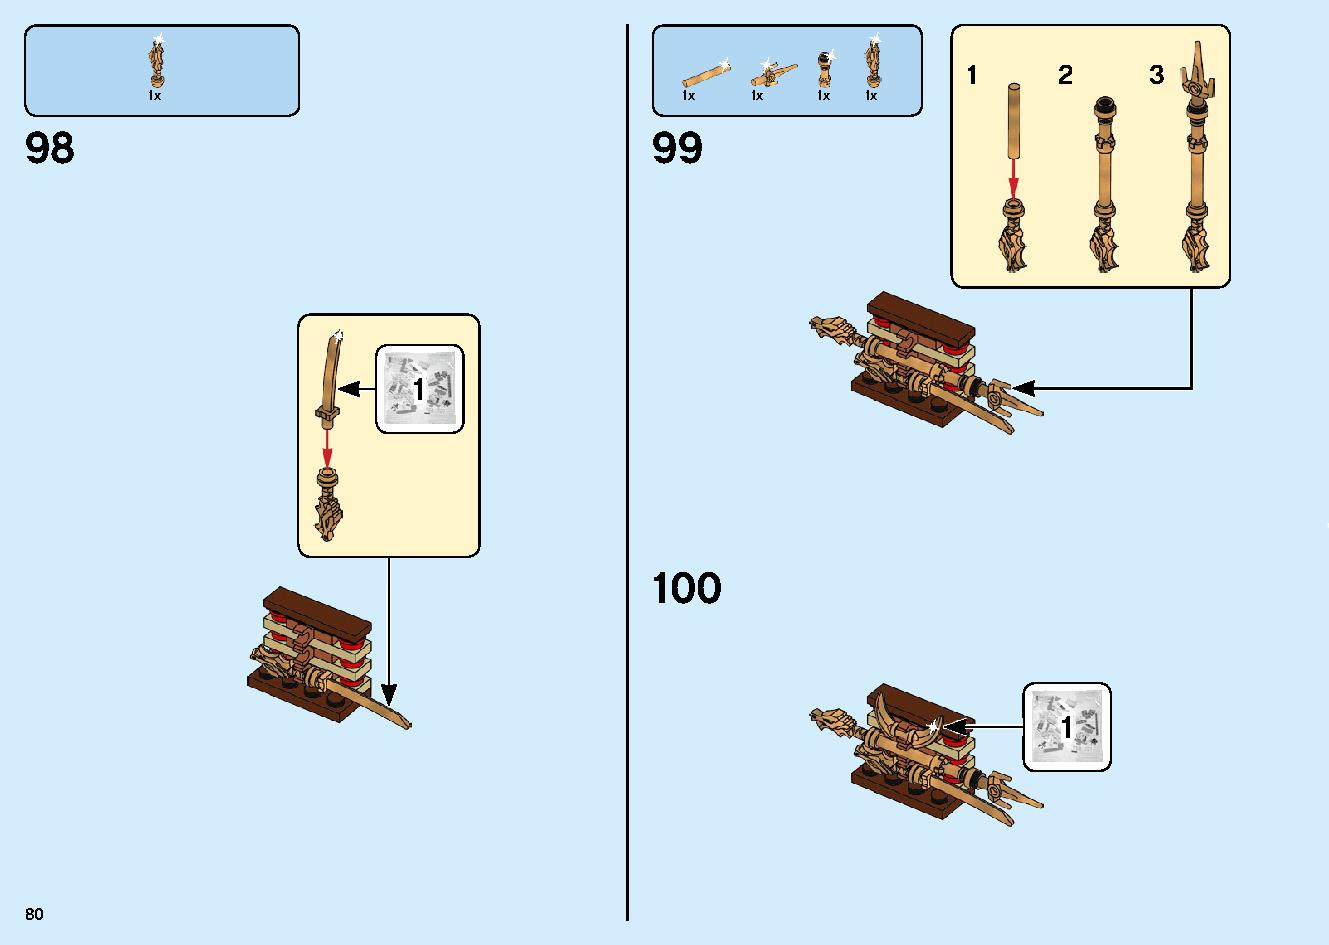 陸上戦艦バウンティ号 70677 レゴの商品情報 レゴの説明書・組立方法 80 page